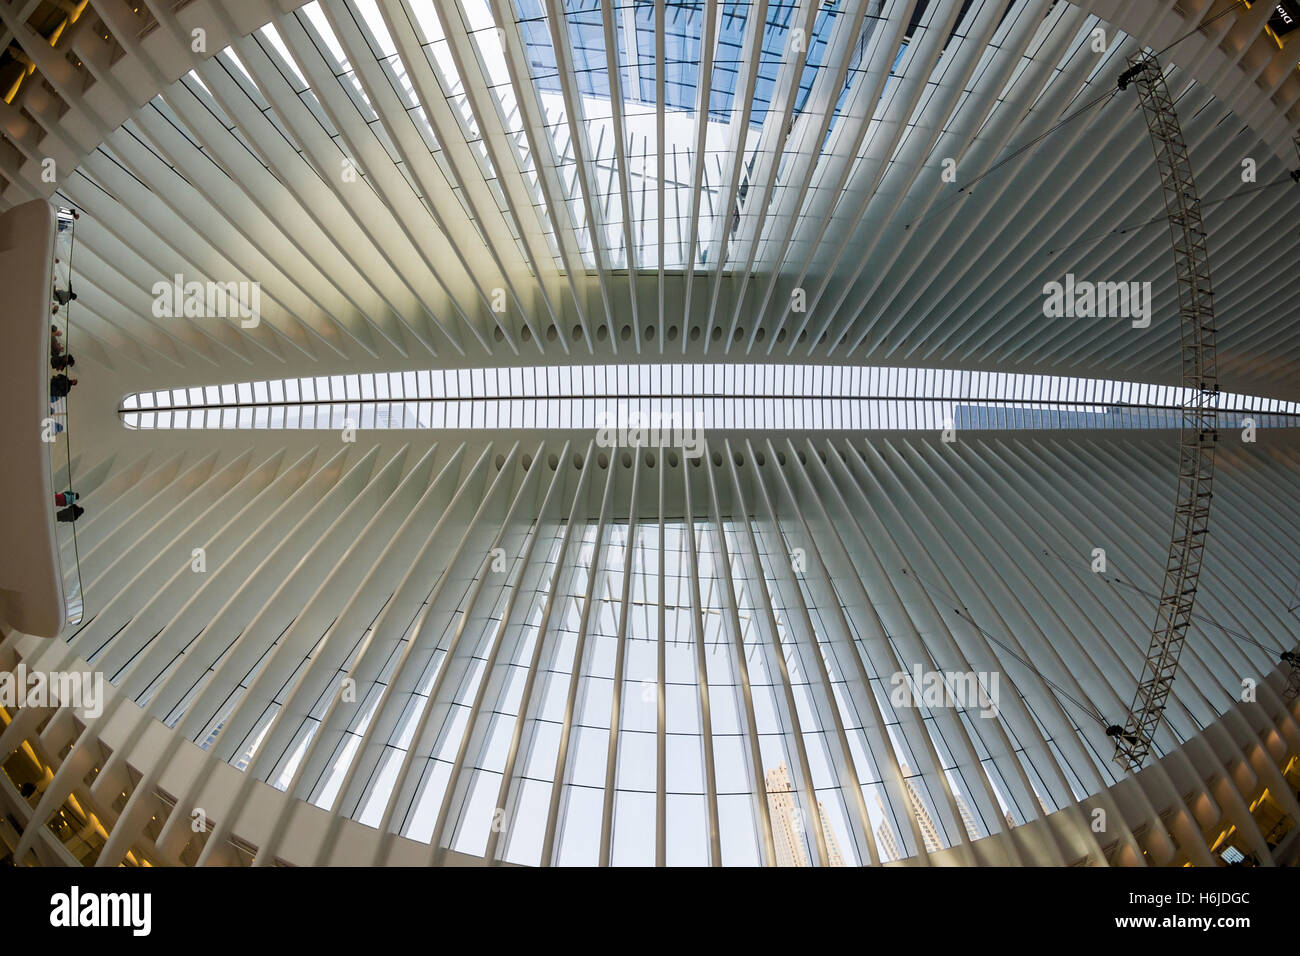 New York, NY Oculus Verkehrsknotenpunkt am World Trade Center, im Jahr 2016 fertiggestellt, bietet 250.000 Port Authority Trans-Hudson (PATH) Pendler und Millionen jährlichen Besuchern aus der ganzen Welt. © Stacy Walsh Rosenstock Stockfoto